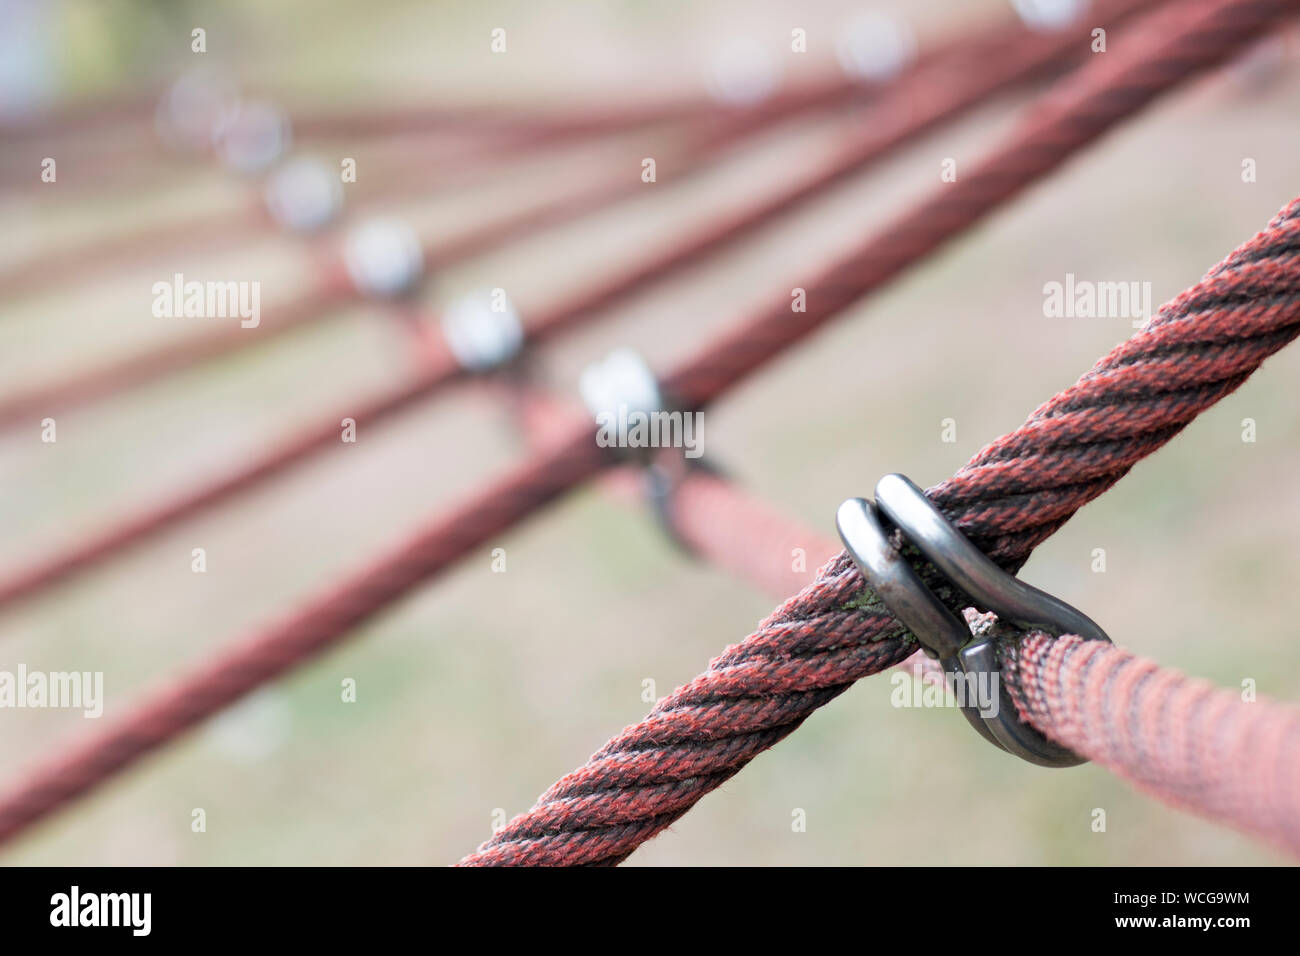 Red Climbing Rope At Playground Stock Photo